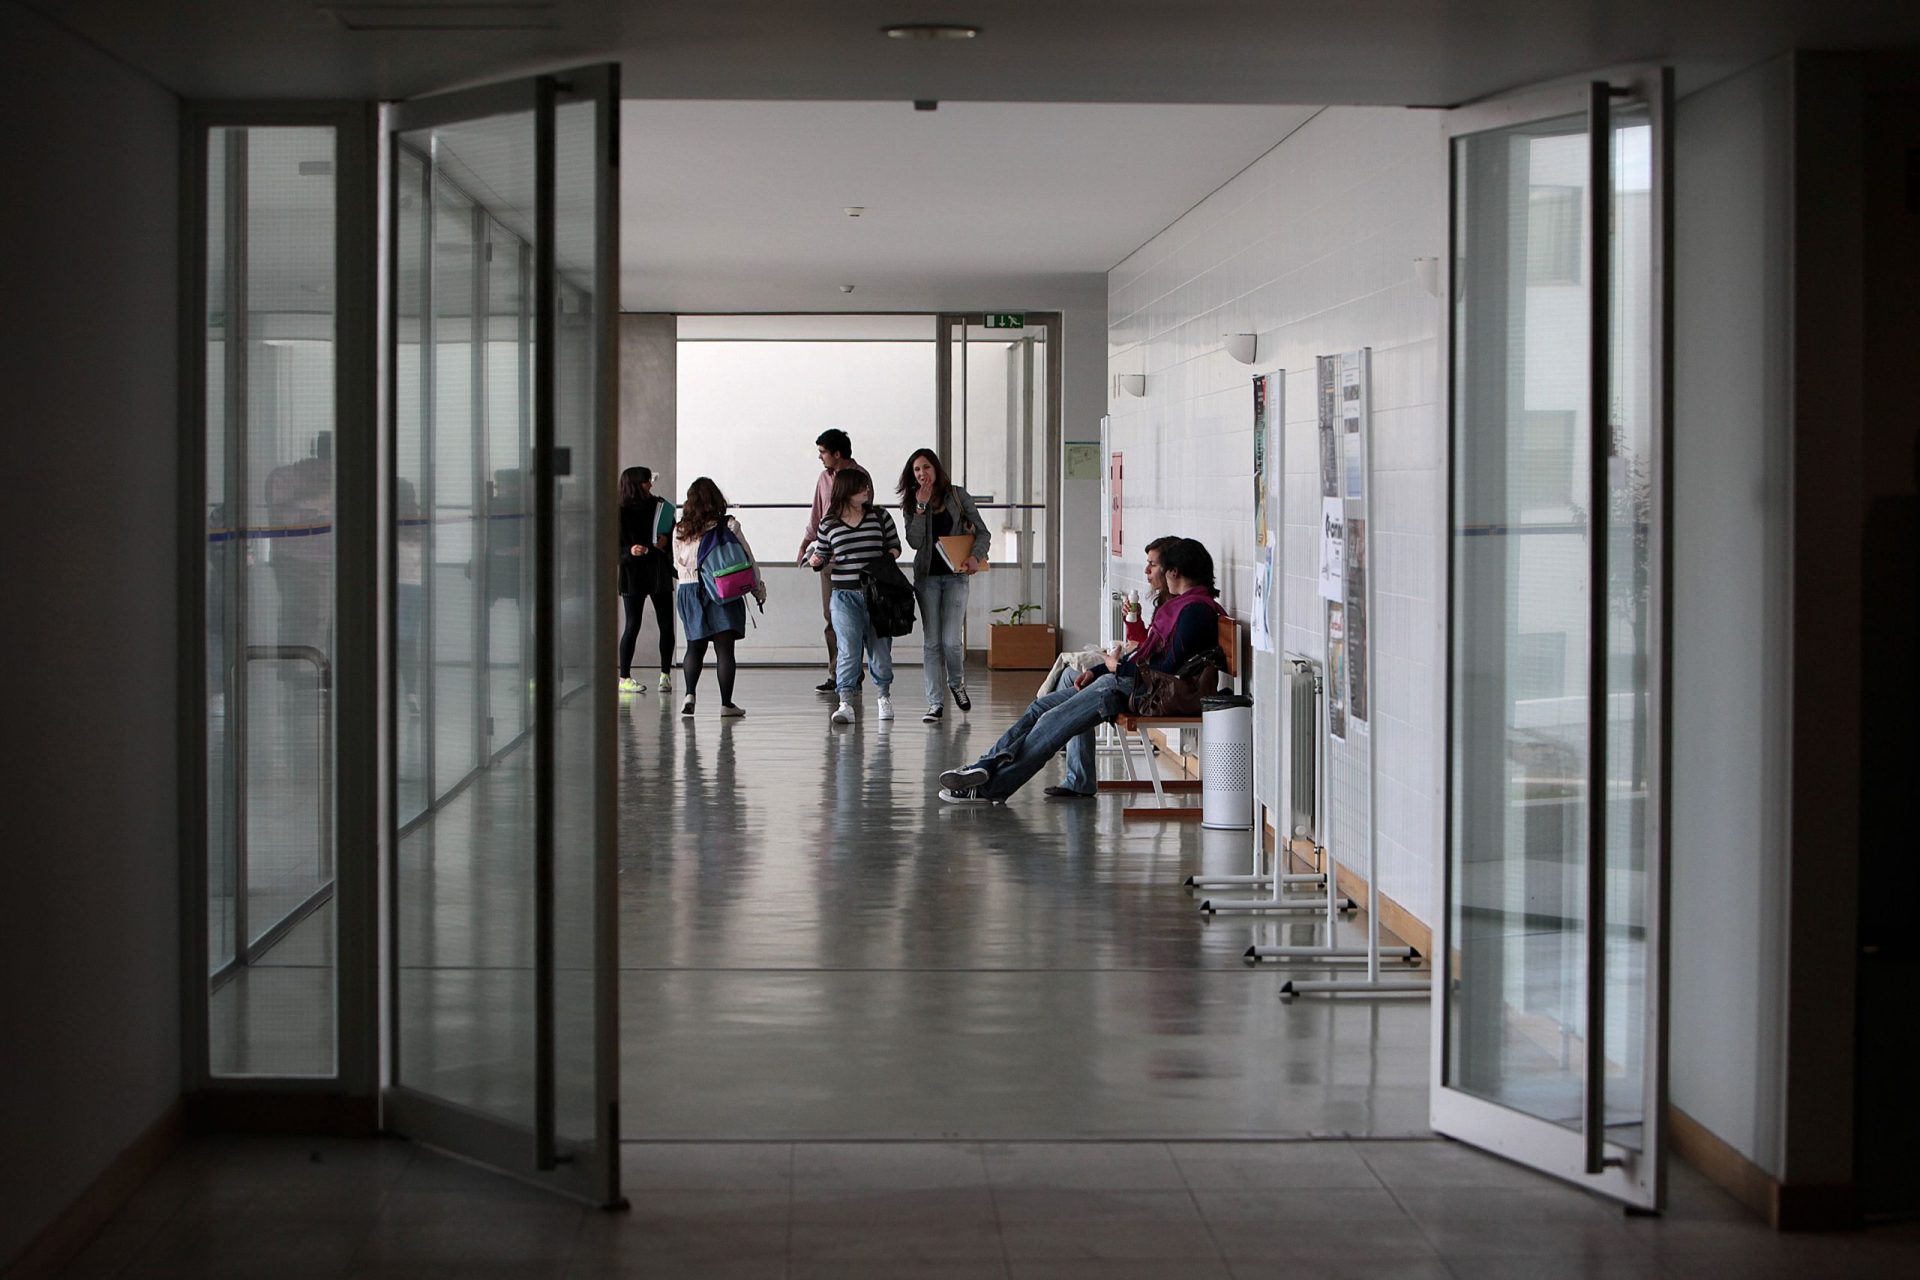 Indústria paga propinas a alunos da Universidade de Aveiro